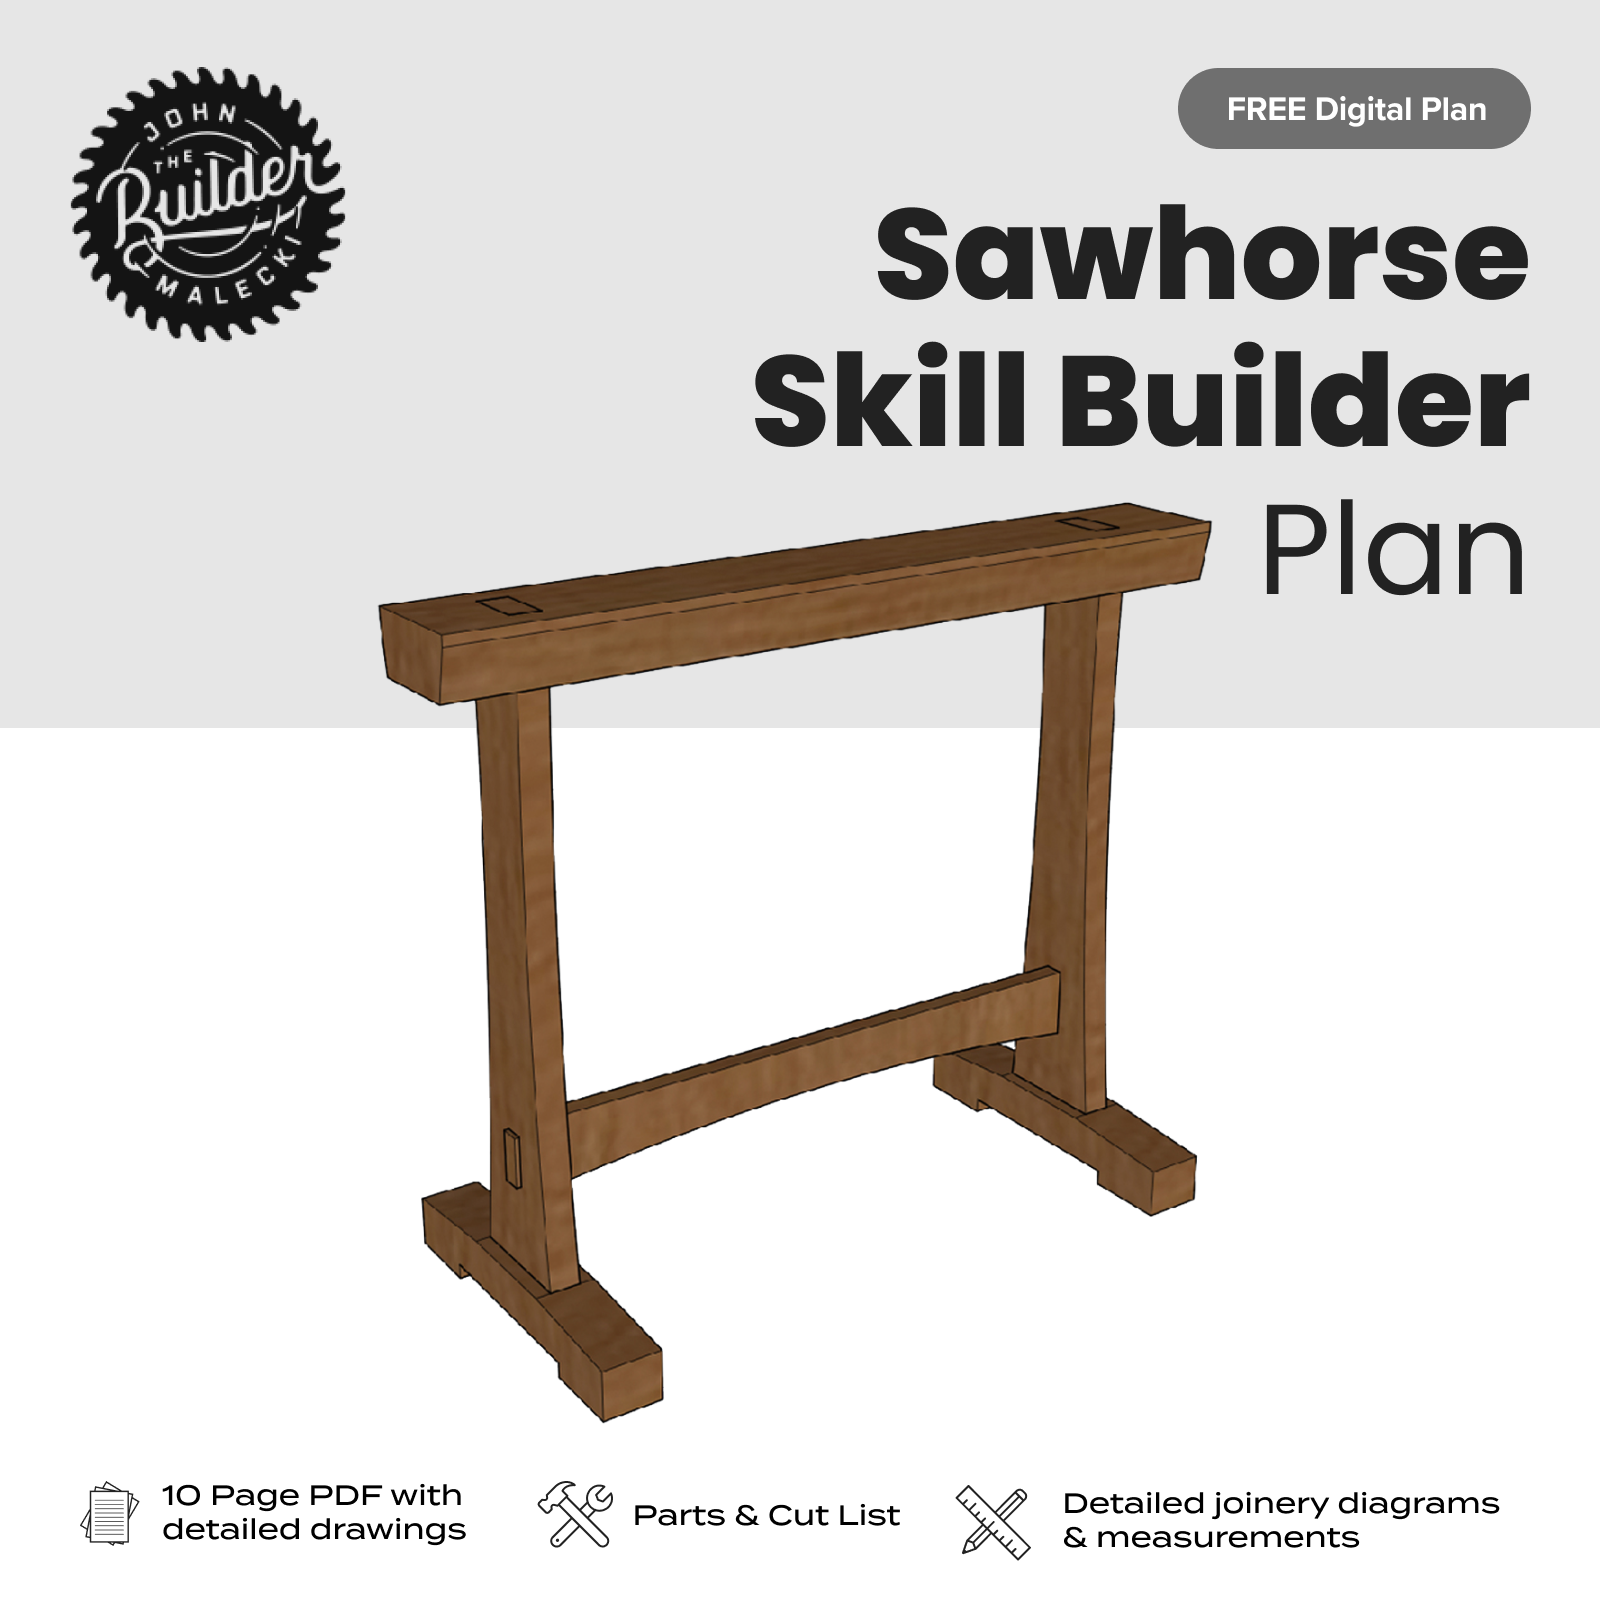 John Malecki - FREE Sawhorse Skill Builder Plan